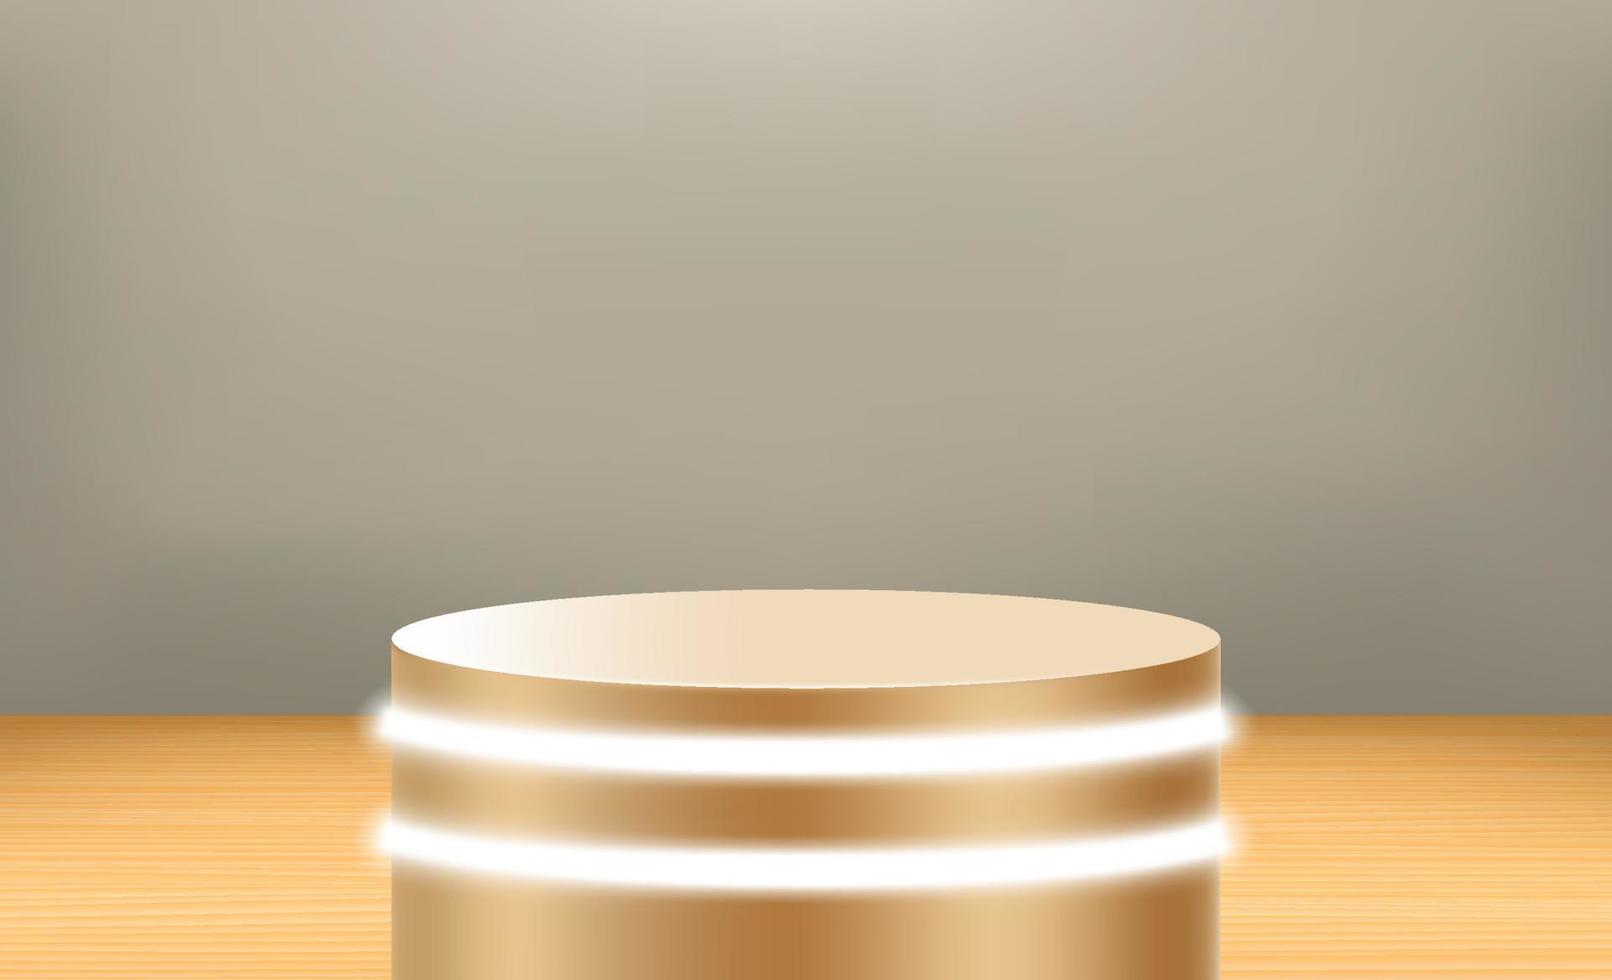 studio illuminato con podio. illustrazione vettoriale 3d